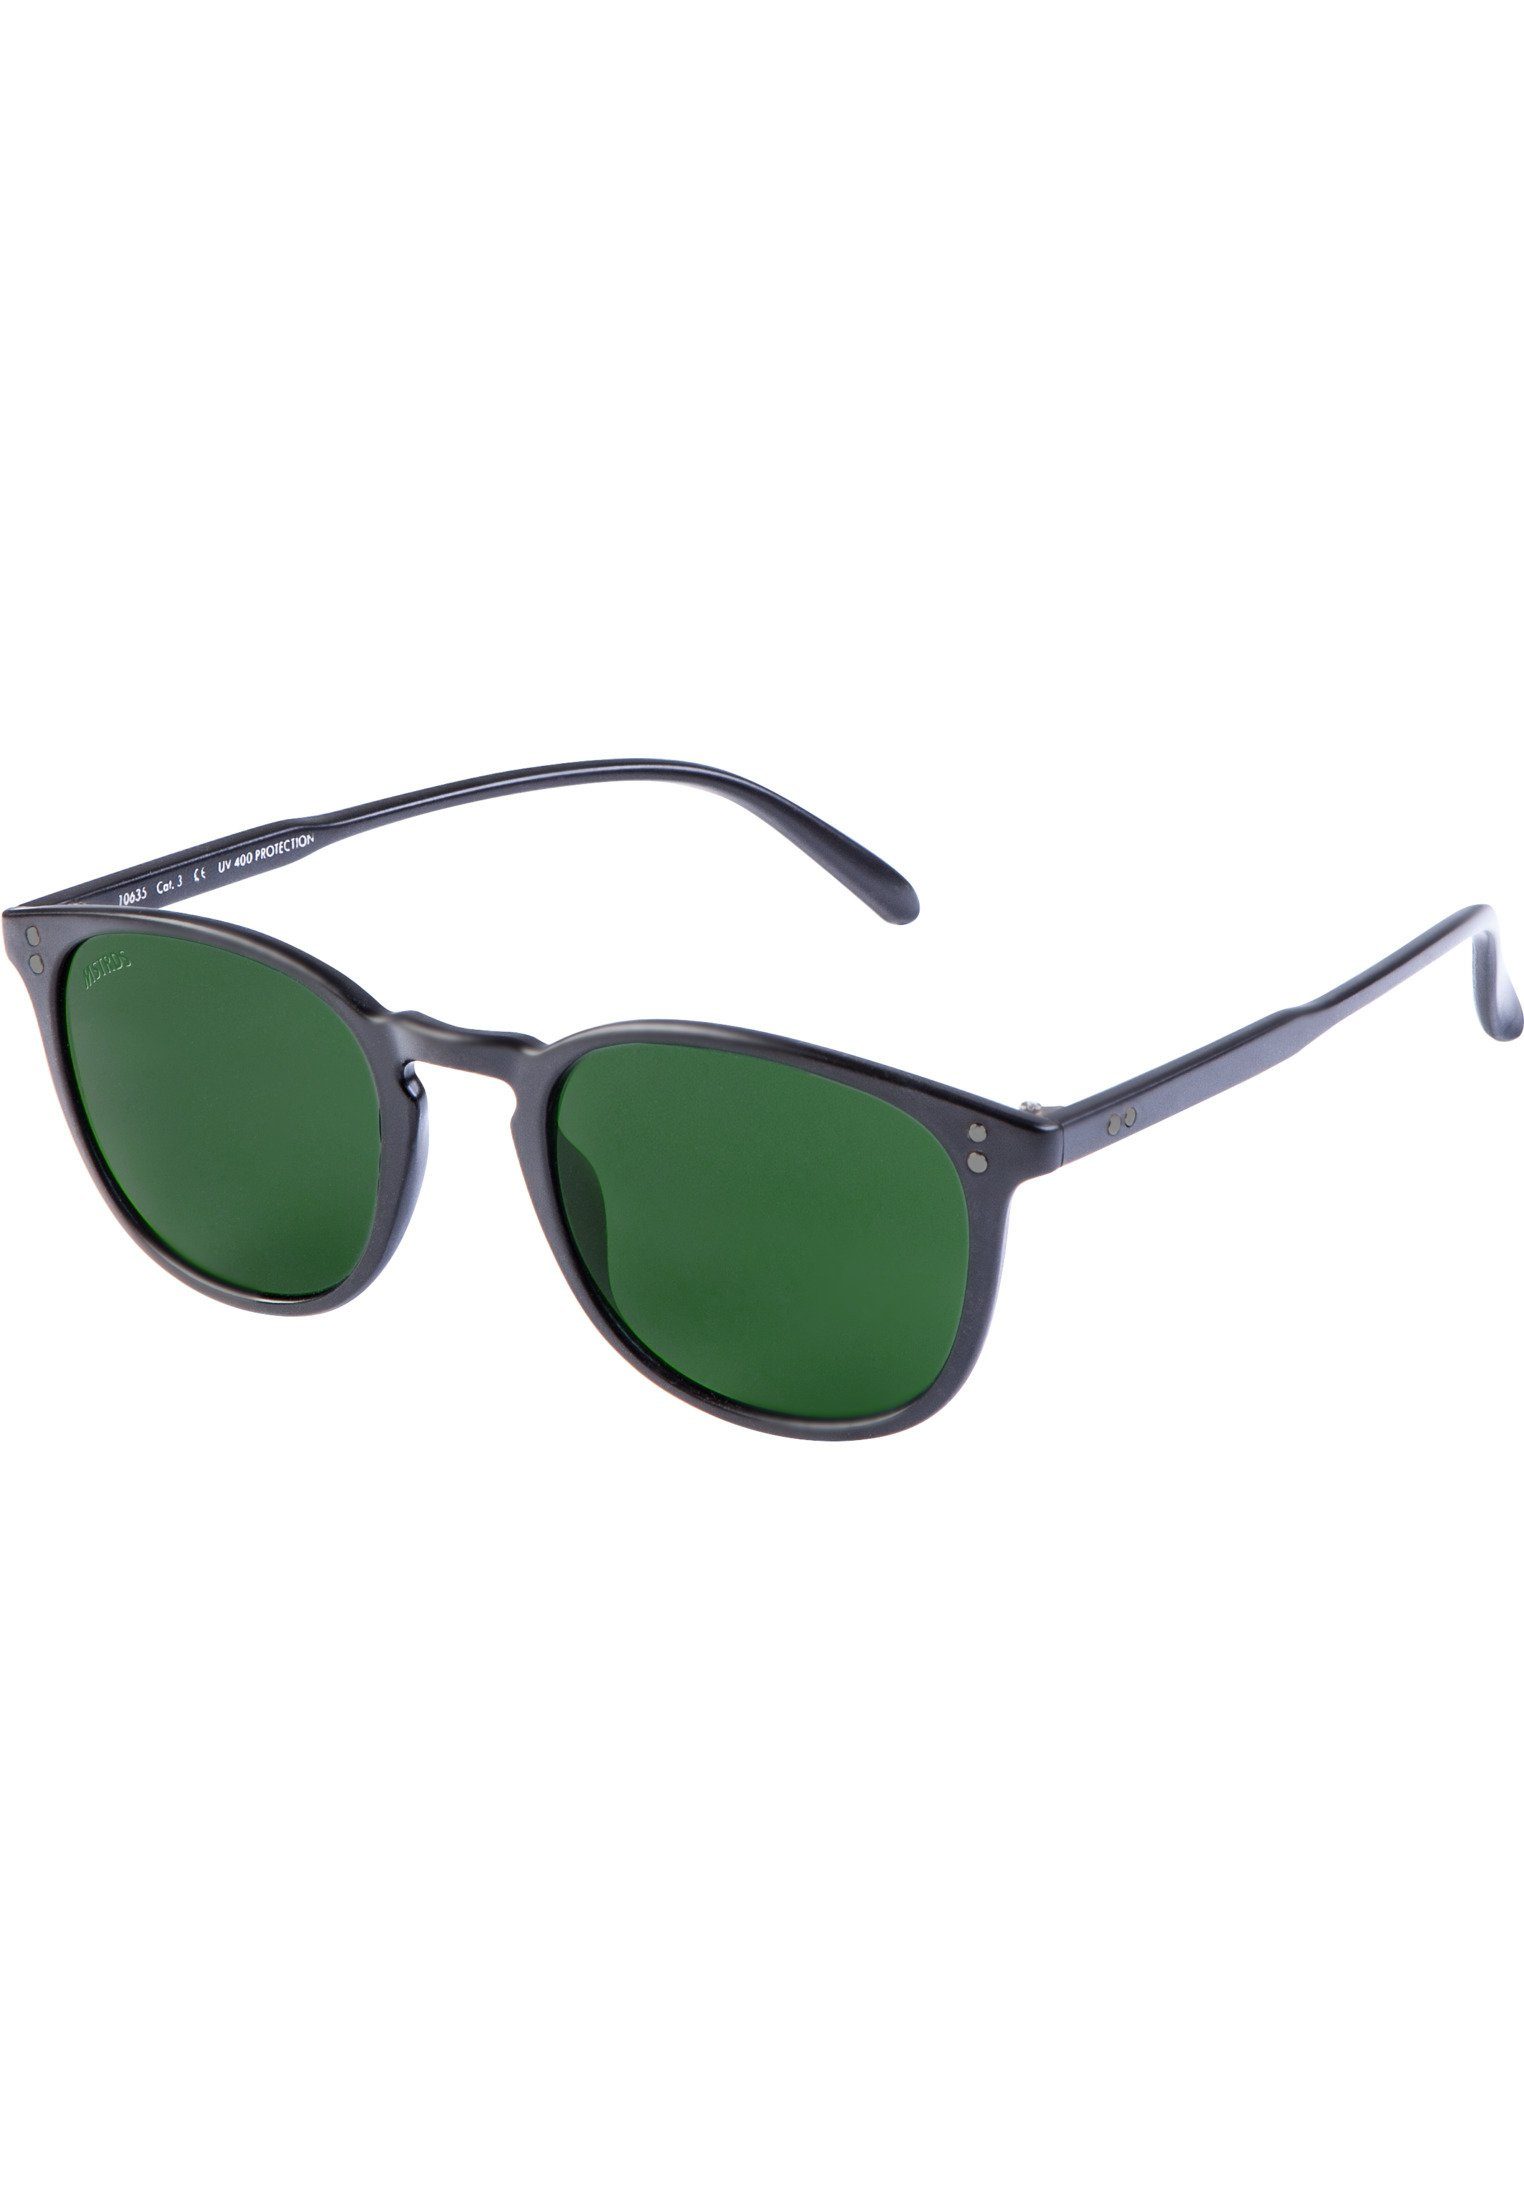 blk/grn Sunglasses Arthur MSTRDS Sonnenbrille Accessoires